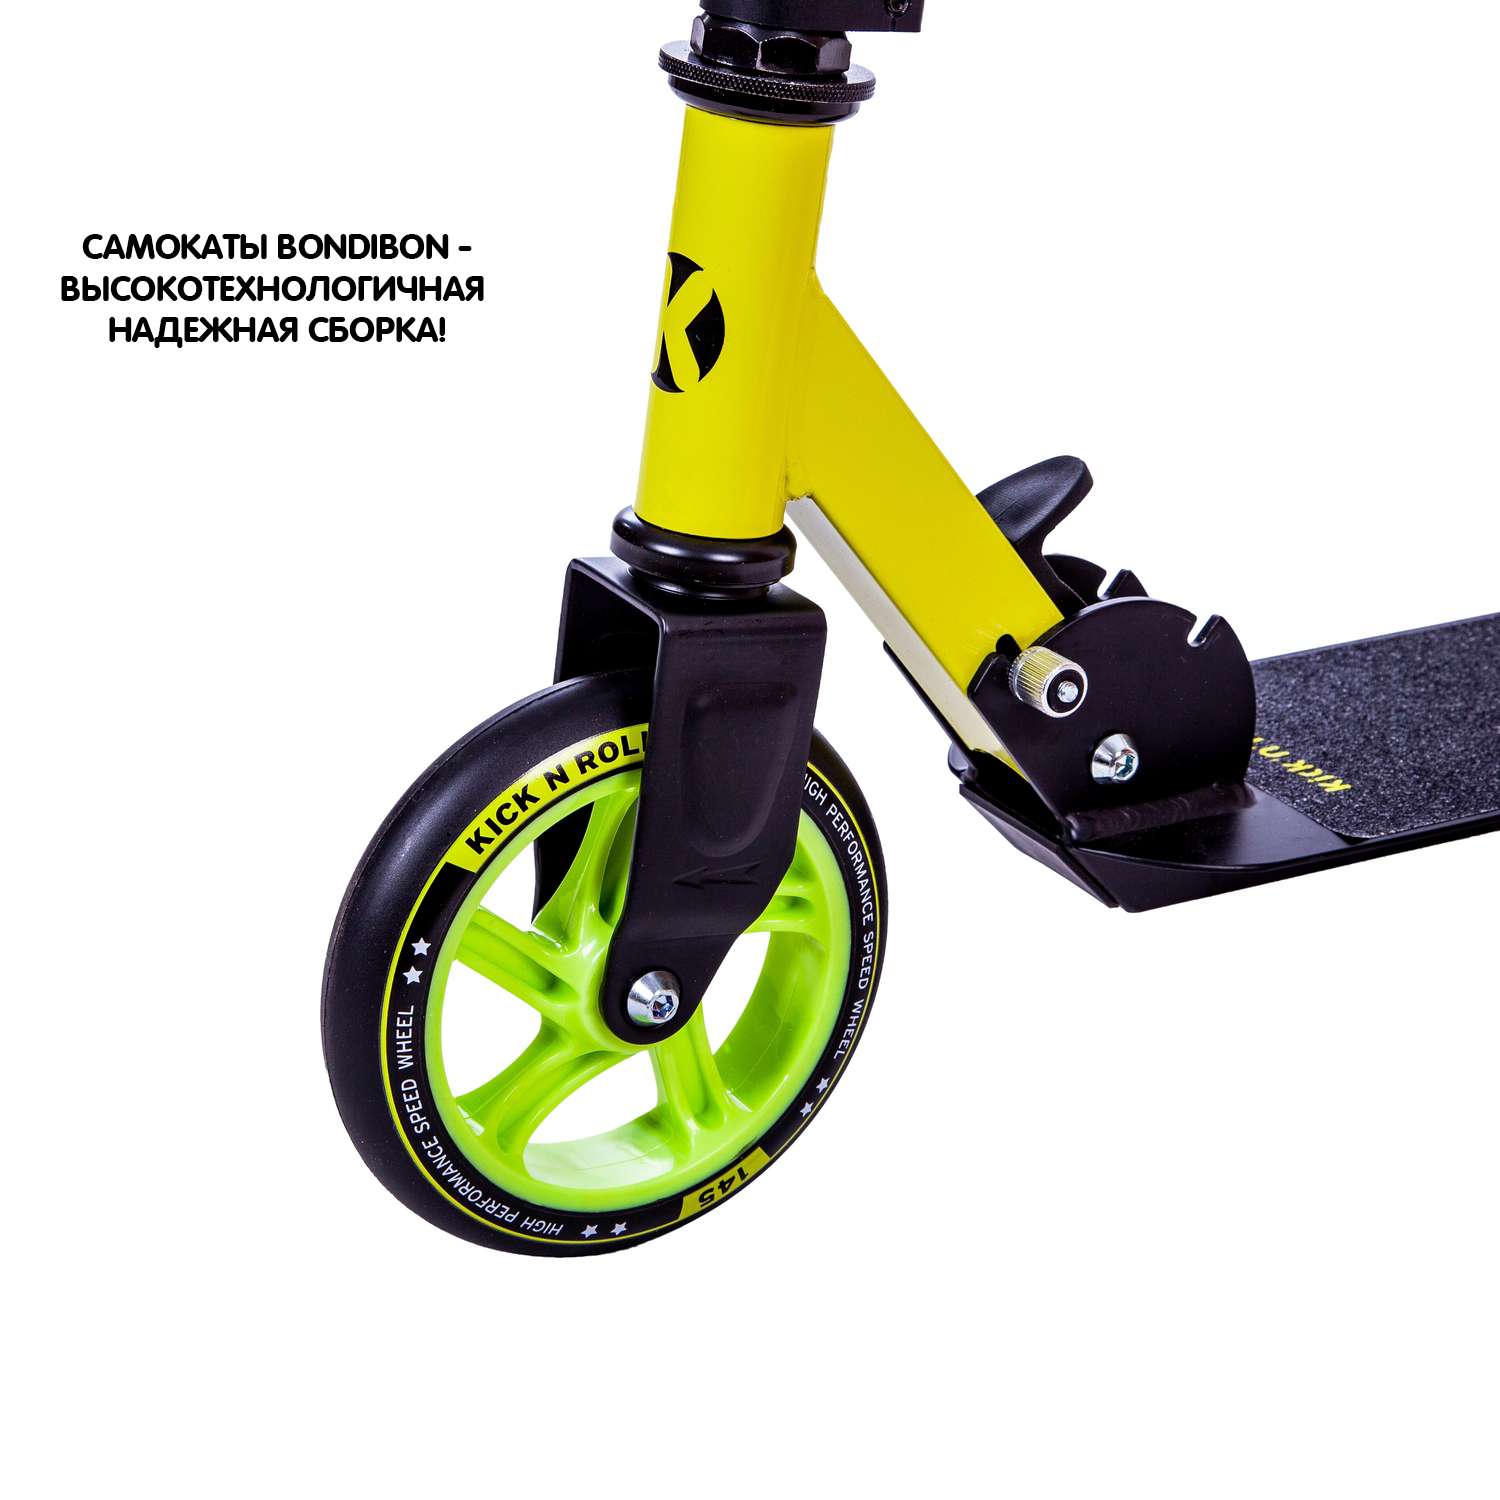 Самокат детский kick n roll складной алюминиевый чёрно-жёлтого цвета колеса 145 мм - фото 7